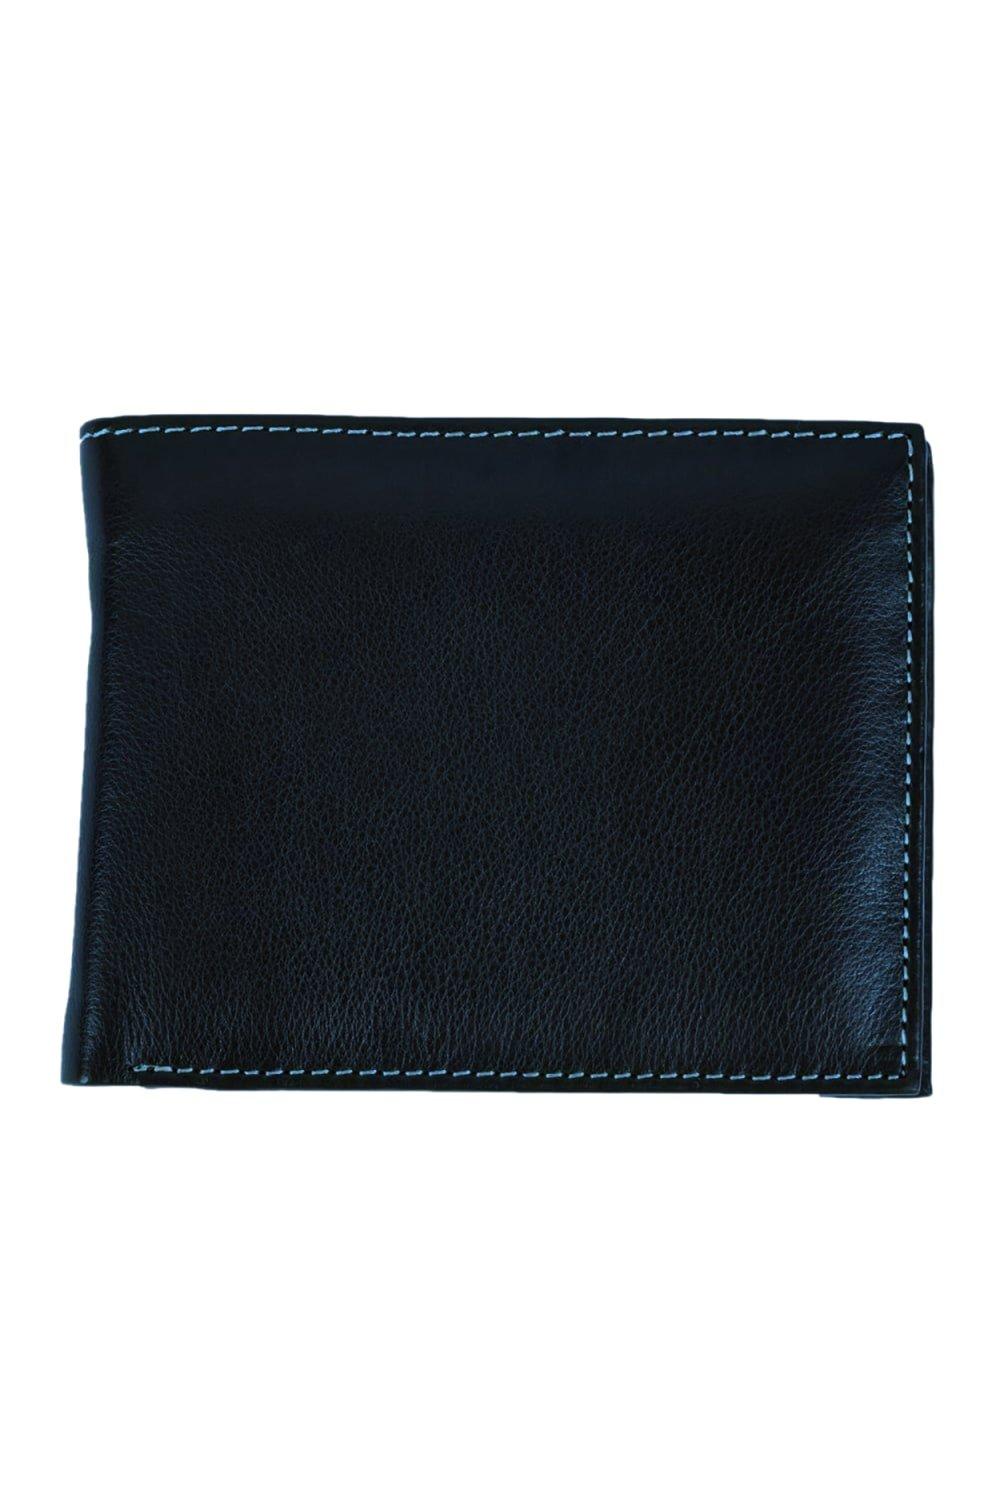 персонализированный кошелек для фотографии для женщин короткий кошелек тройного сложения из искусственной кожи женский кошелек в подаро Кошелек Mark Trifold с карманом для монет Eastern Counties Leather, темно-синий